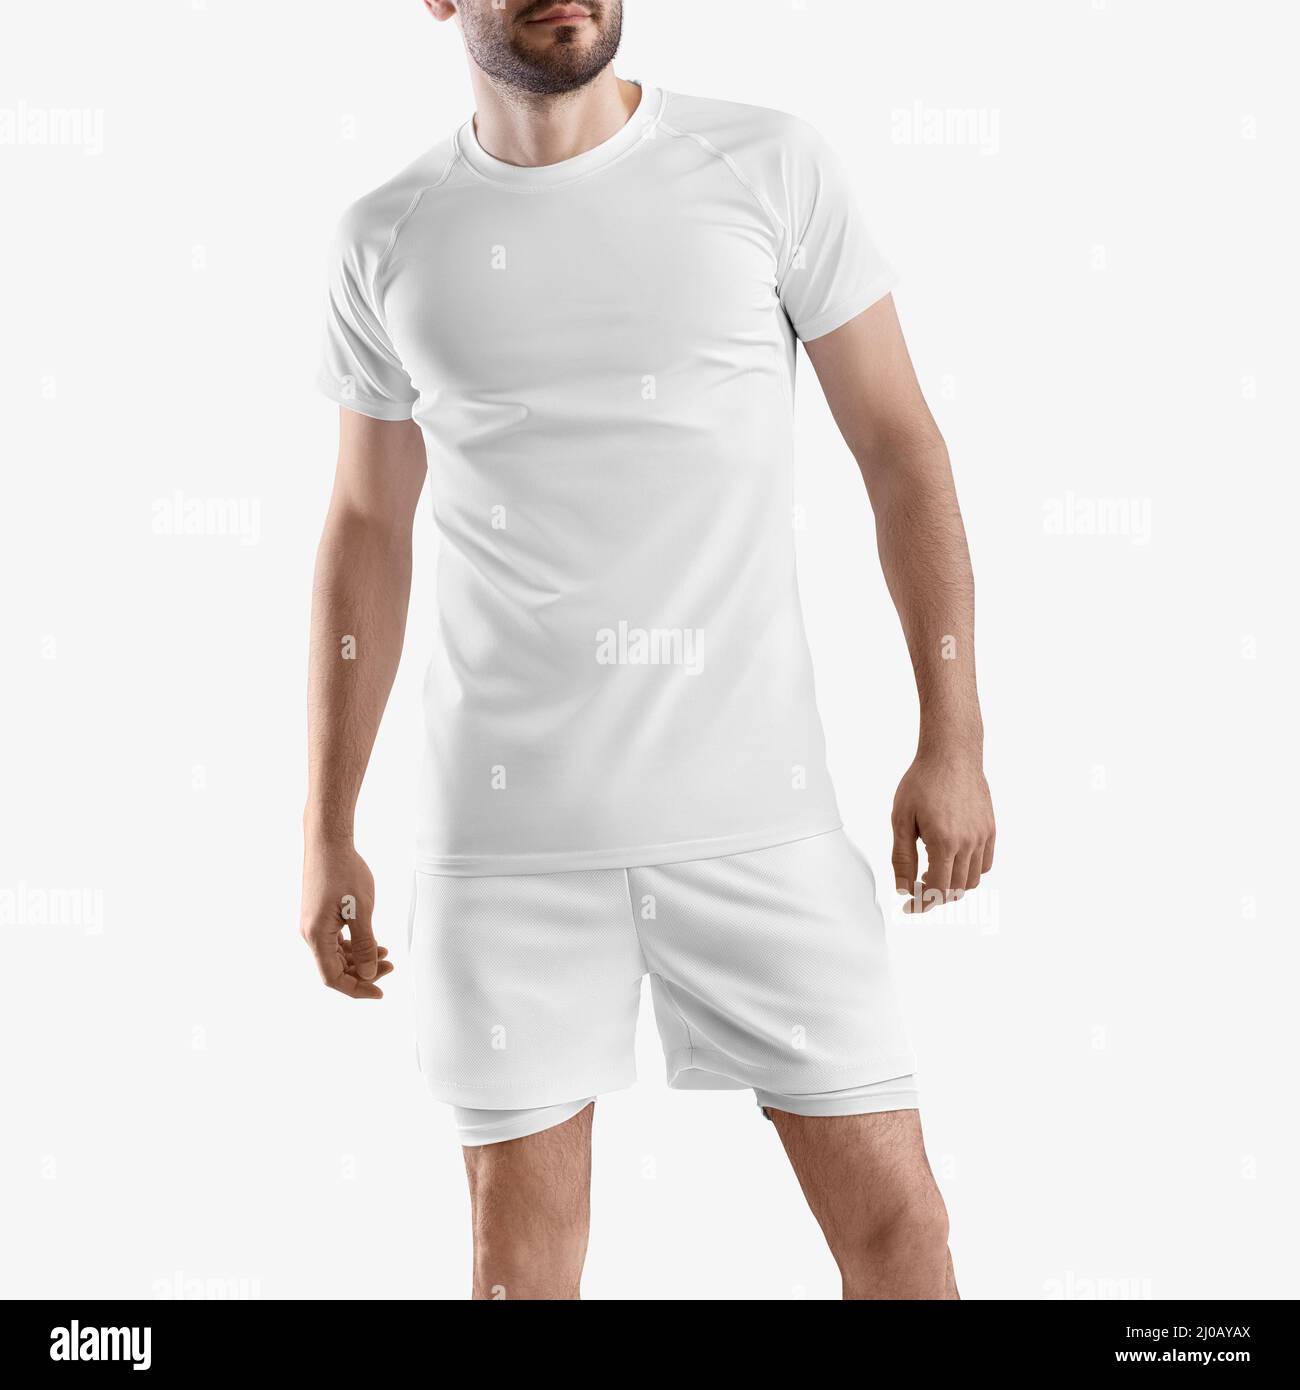 Weißer Trainingsanzug, lockere Shorts mit Unterhose Kompressionslinie,  T-Shirt auf Mann, isoliert auf Hintergrund, Vorderansicht.  Sportswear-Vorlage, unters Stockfotografie - Alamy